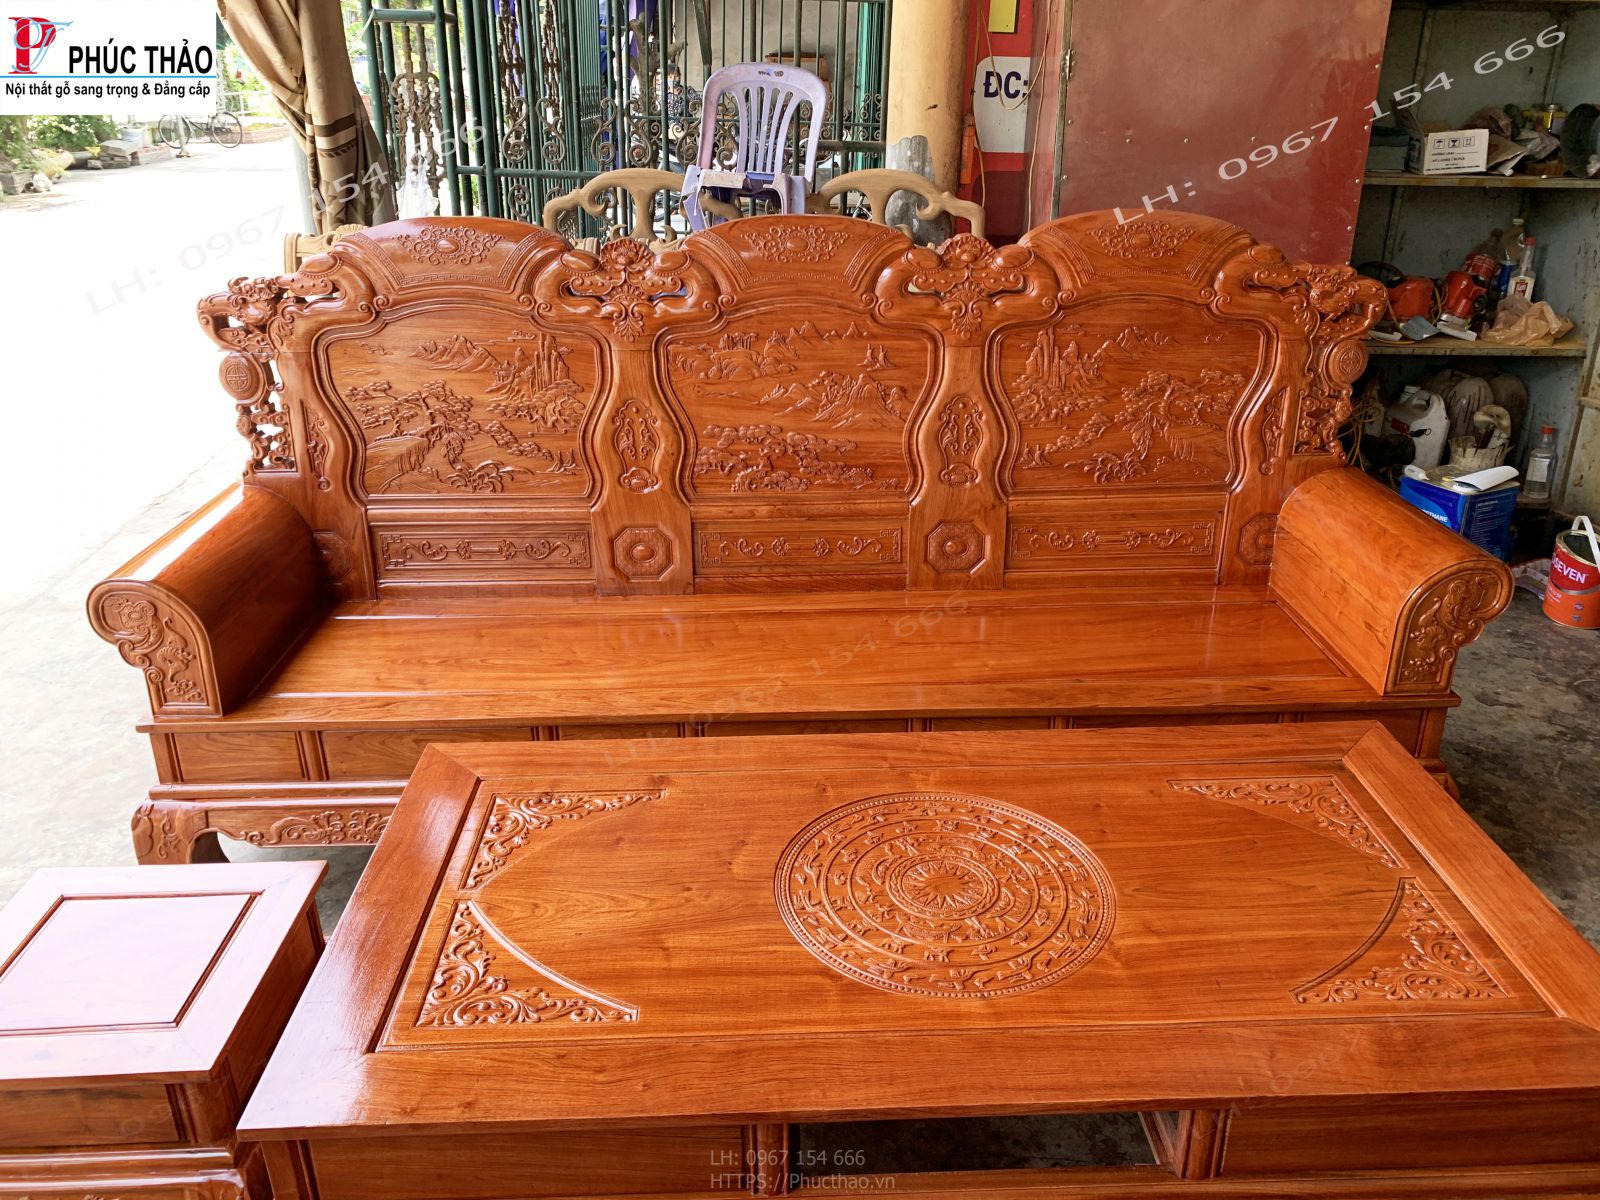 Hình ảnh chi tiết bộ bàn ghế khổng minh gỗ hương